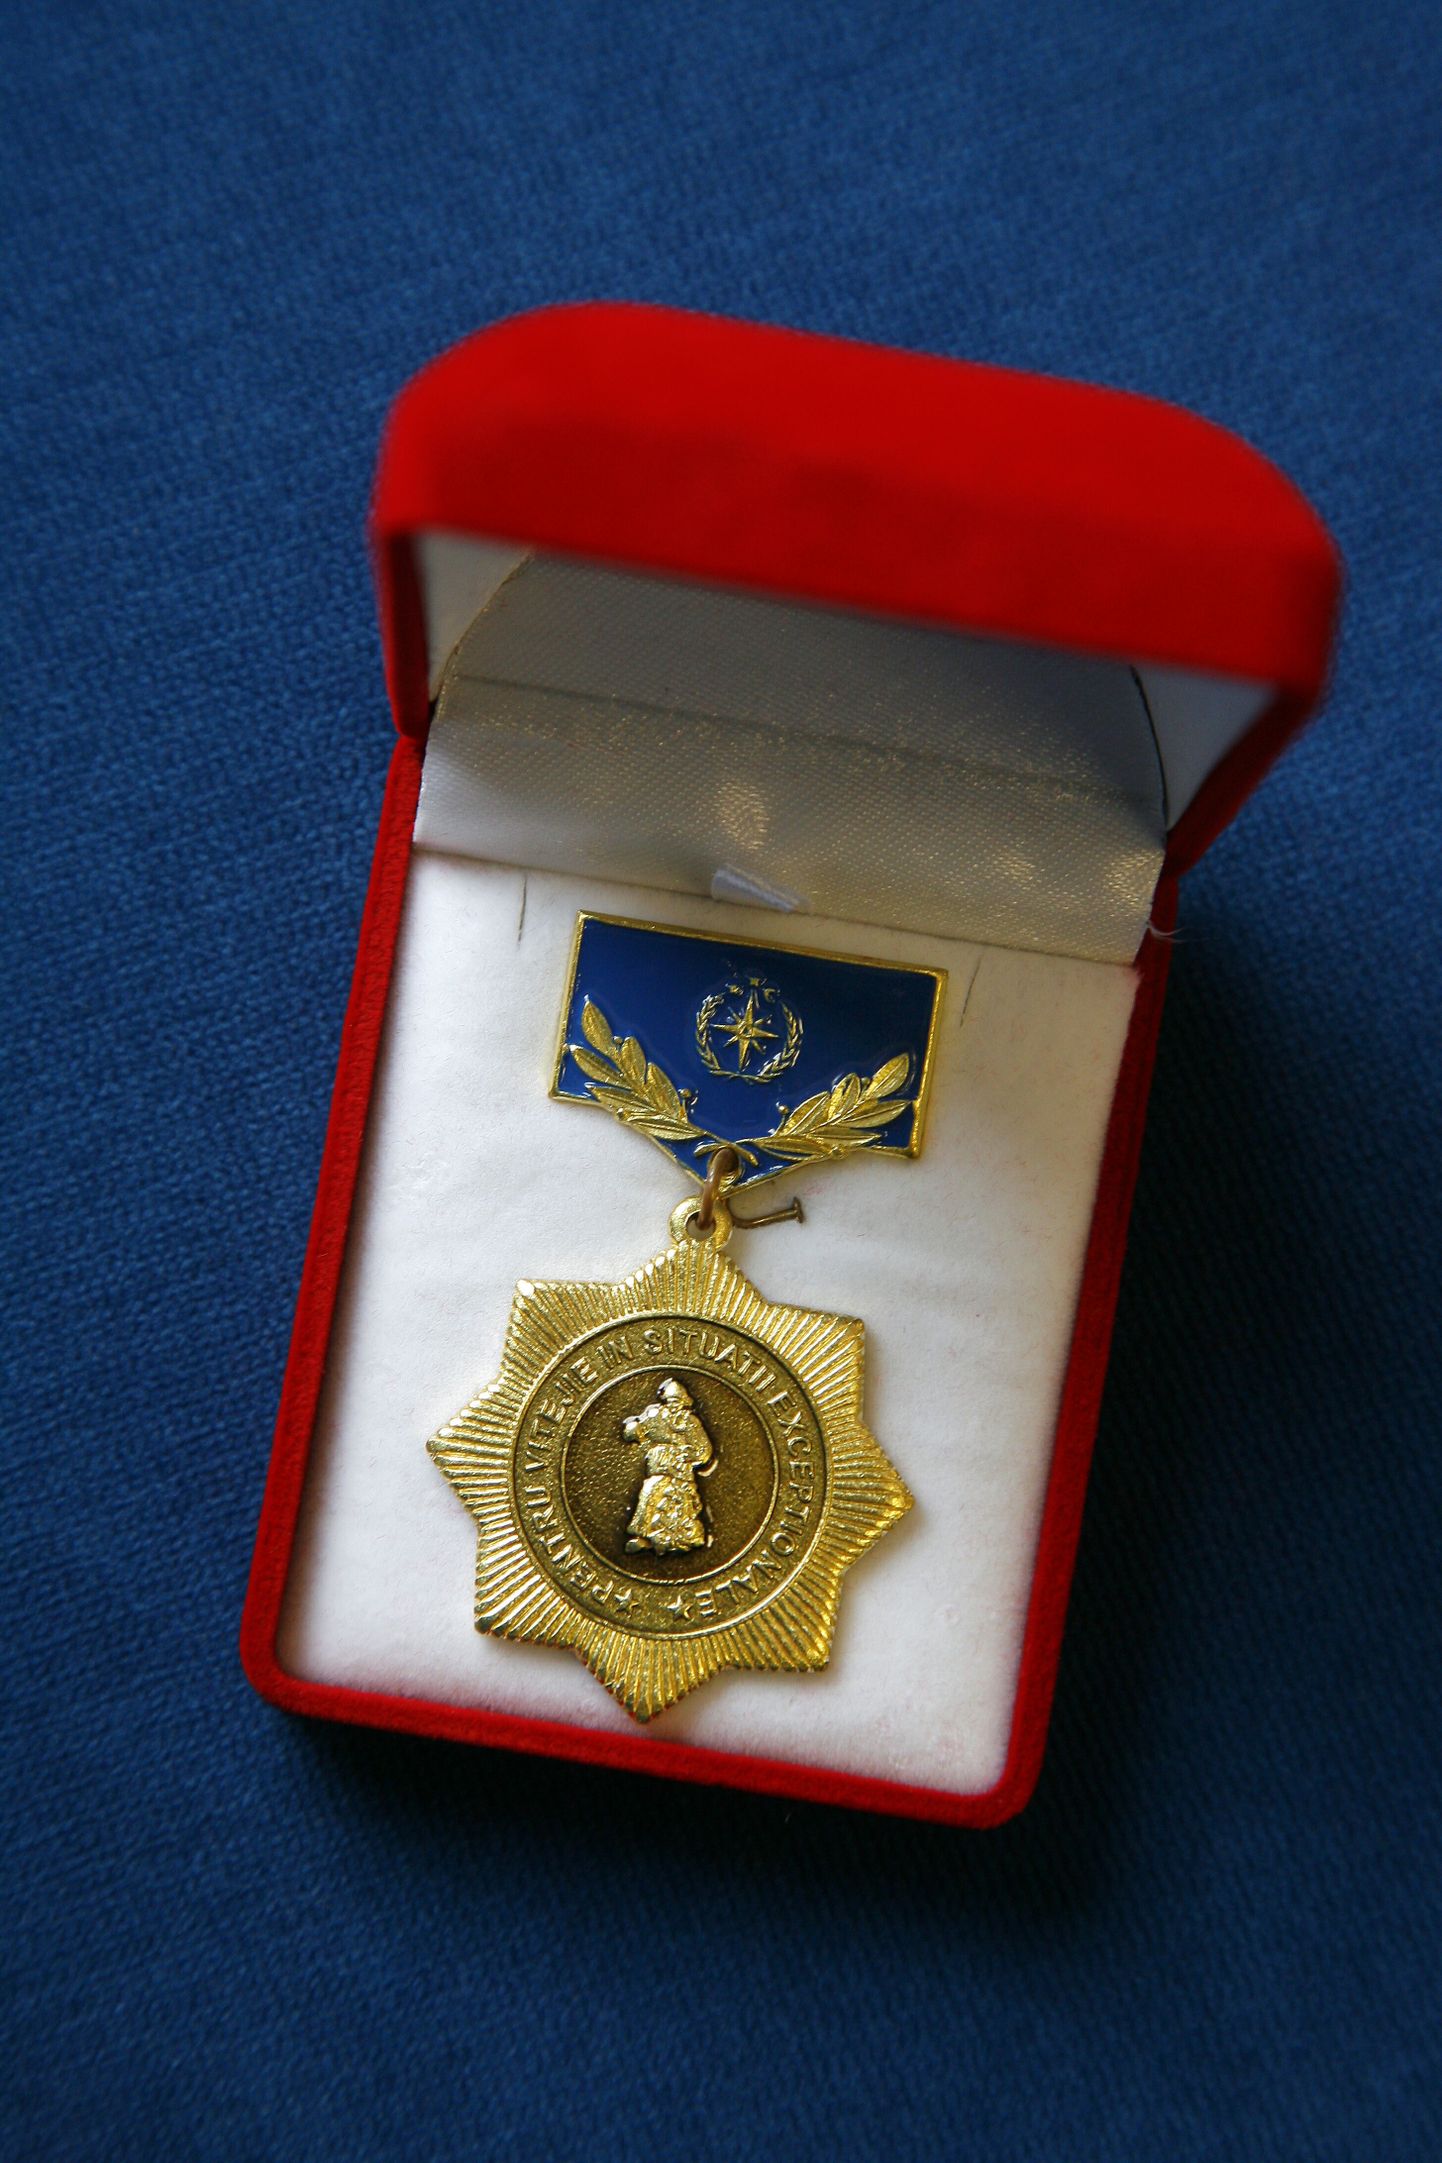 Jaanus Teearule omistatud Moldova medal.